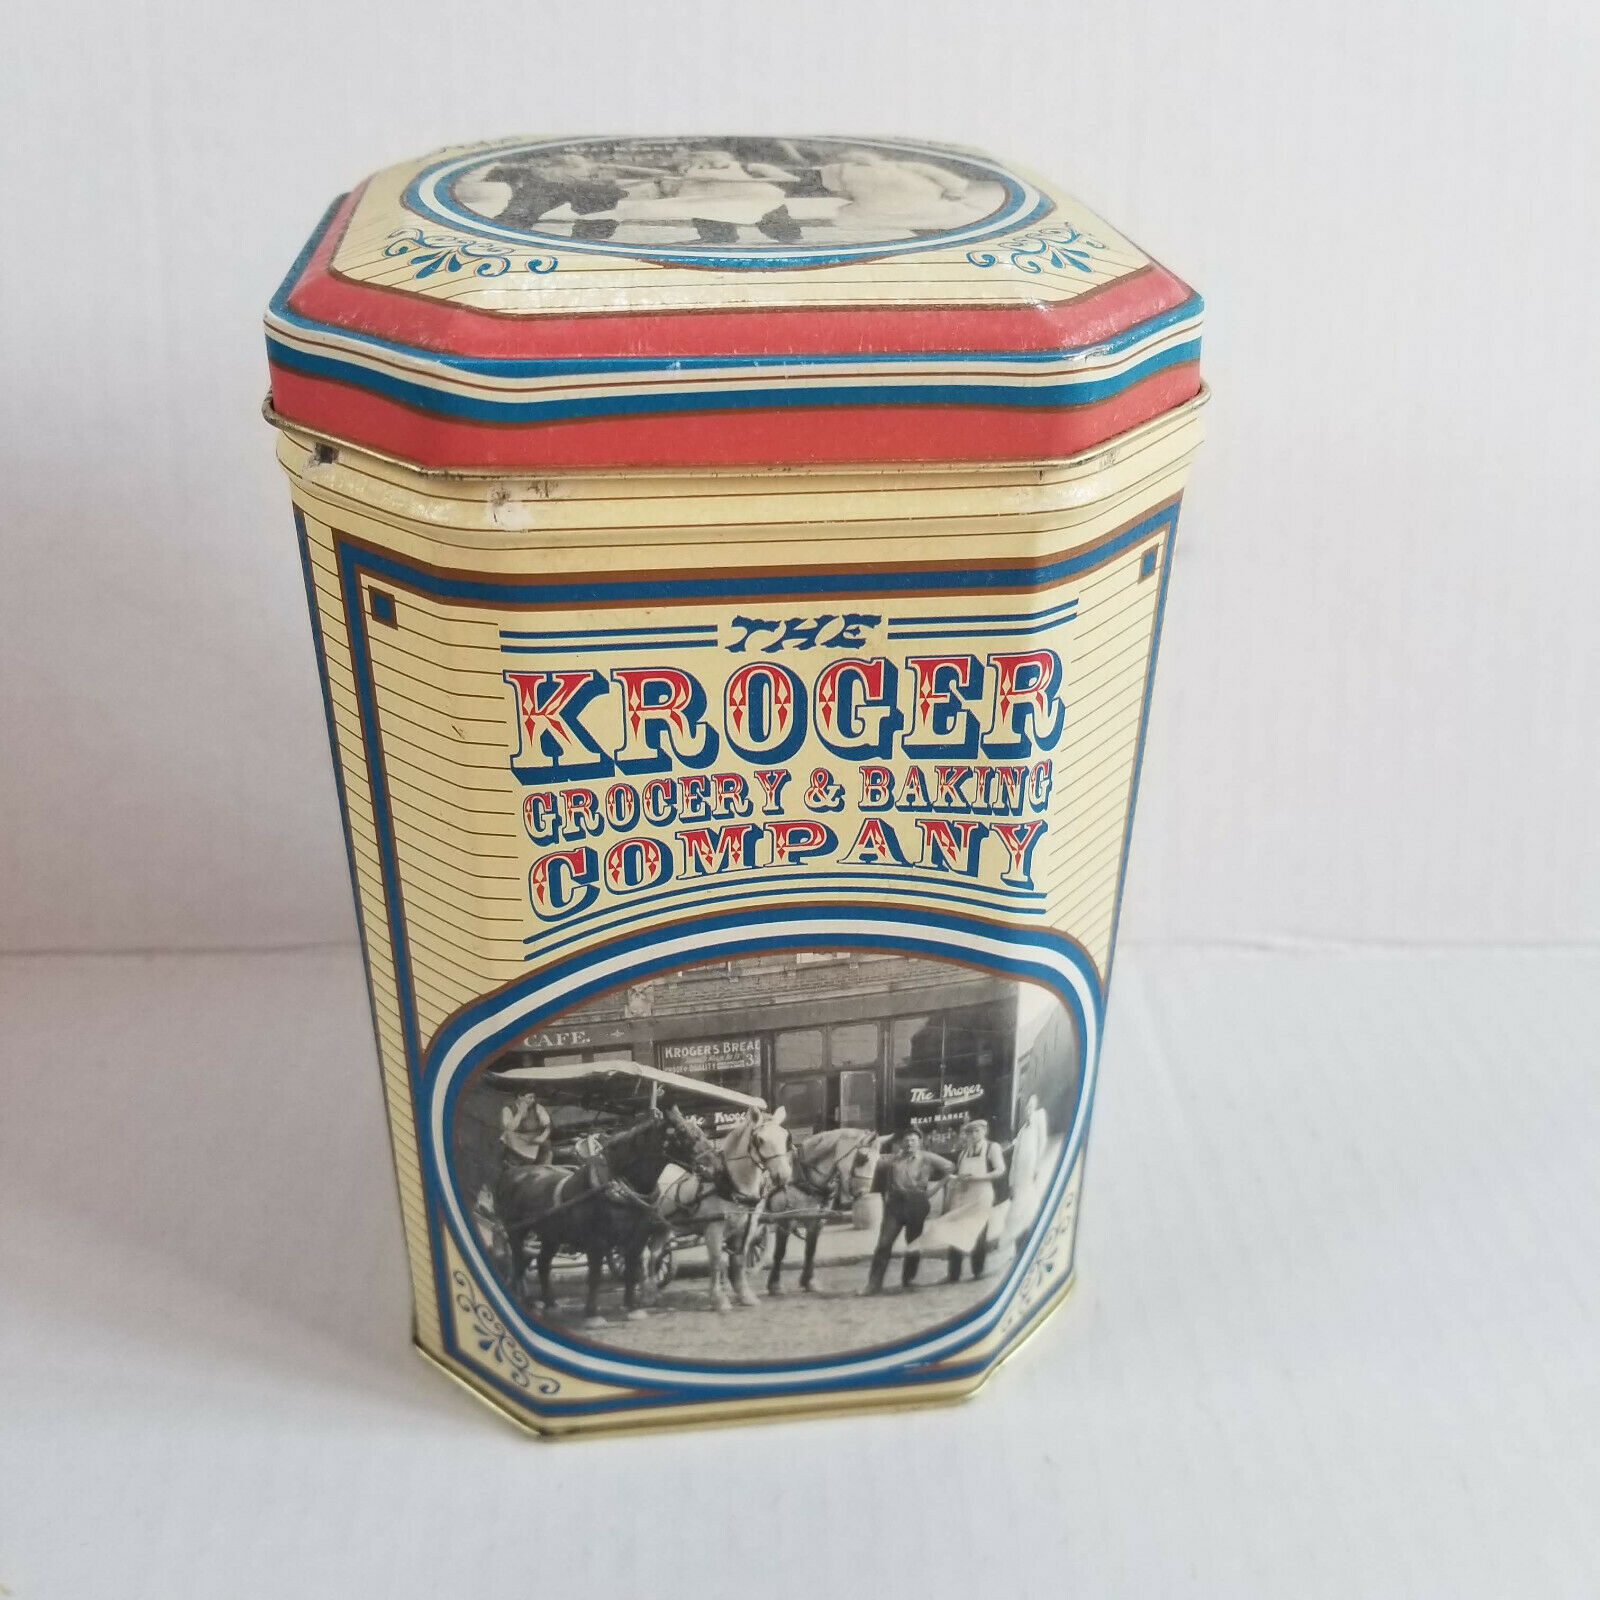 Kroger Grocery & Baking Company Tin - 3 Cents A Loaf - Nostalgia / Vintage